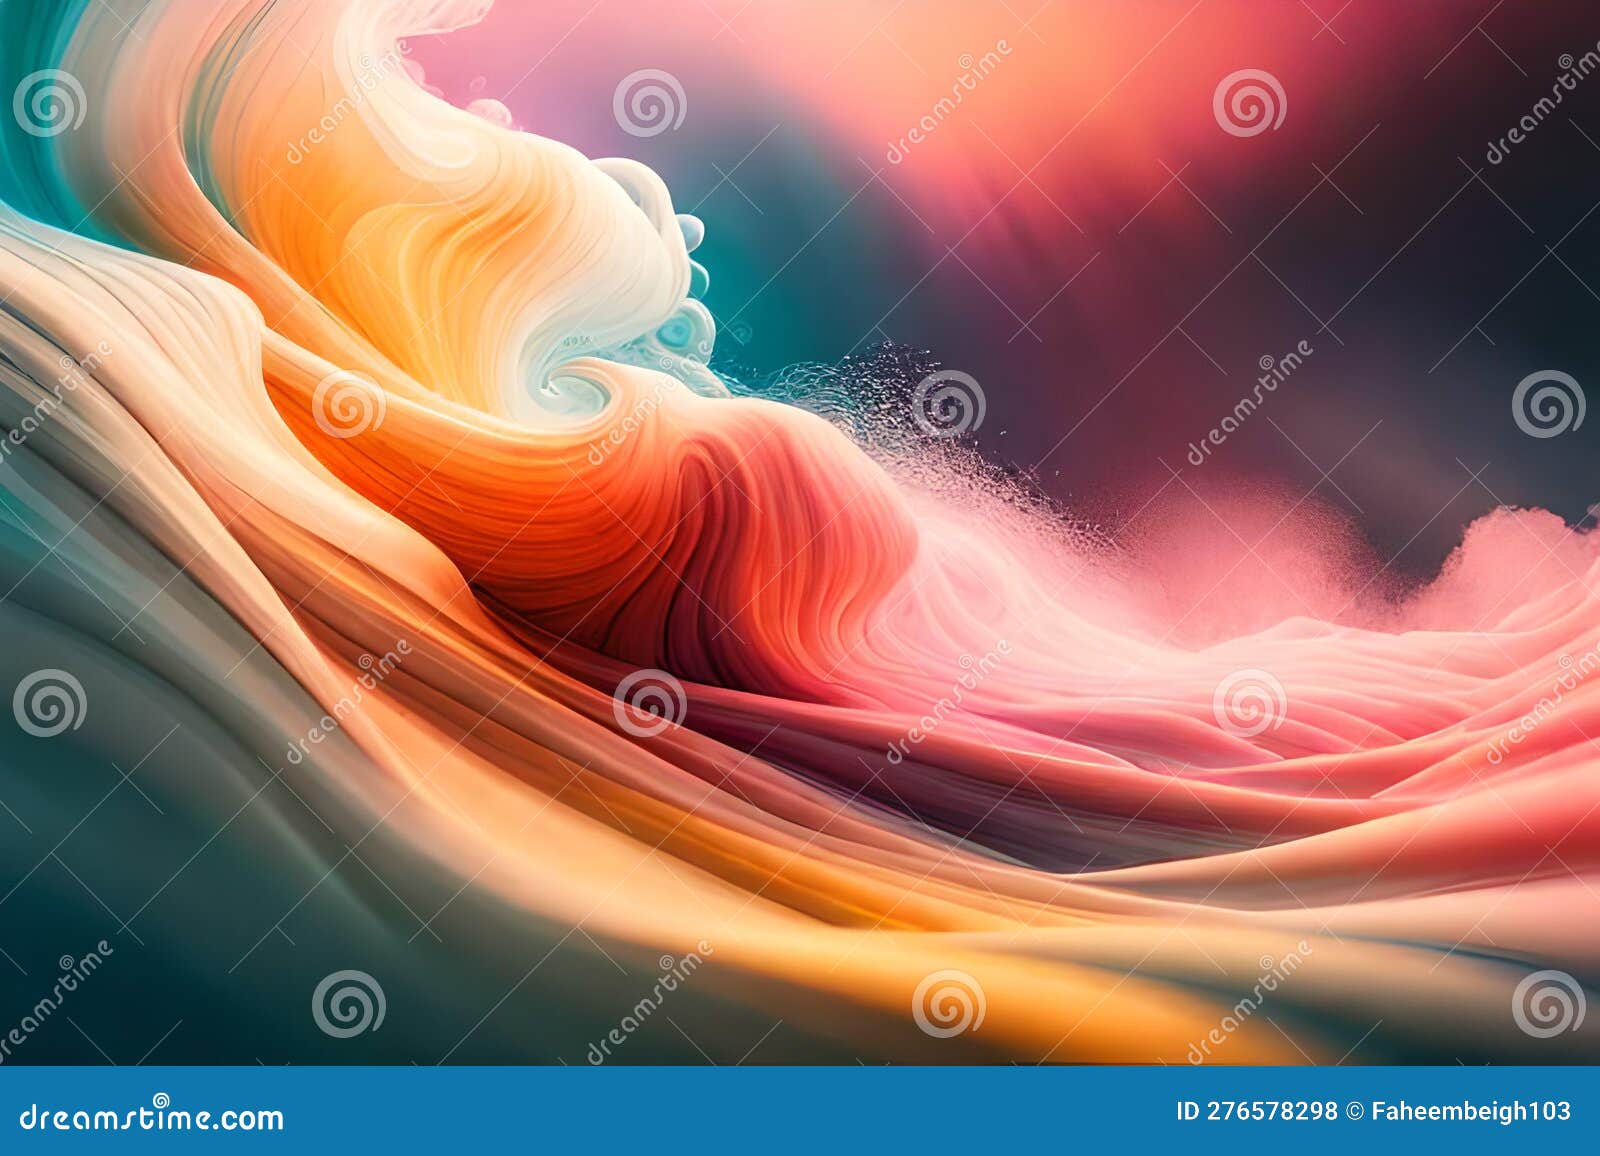 яркий 3d-жидкий абстрактный фон. удивительные абстрактные волны обоев.  красивый красочный абстракт. желтый оранжевый и фиолетовый Иллюстрация  штока - иллюстрации насчитывающей облака, графики: 276578298